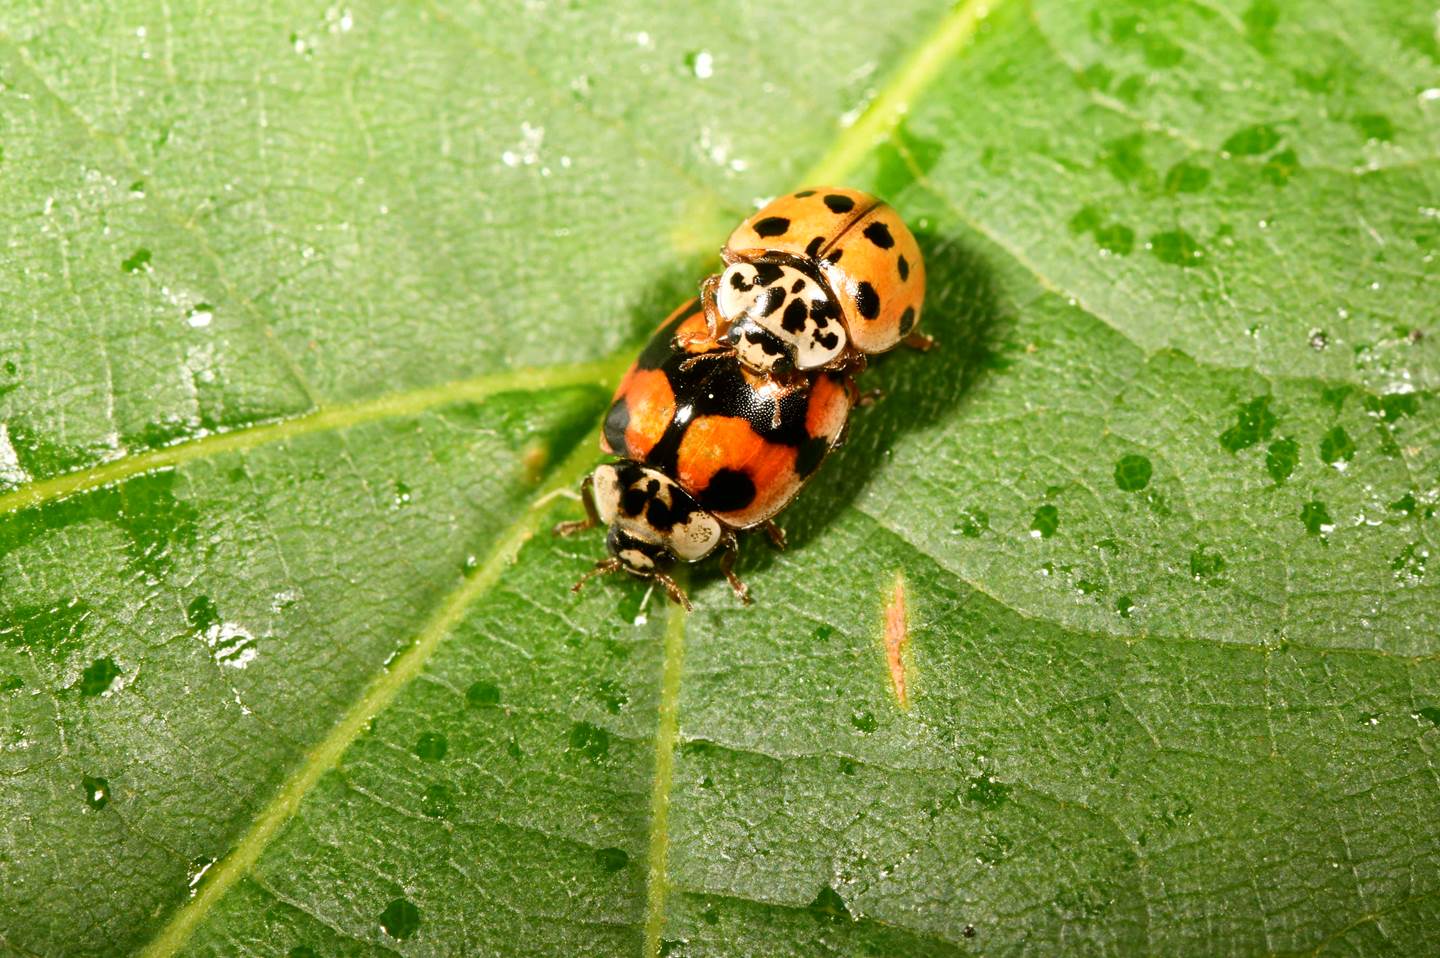 A ladybug on a leaf

Description automatically generated